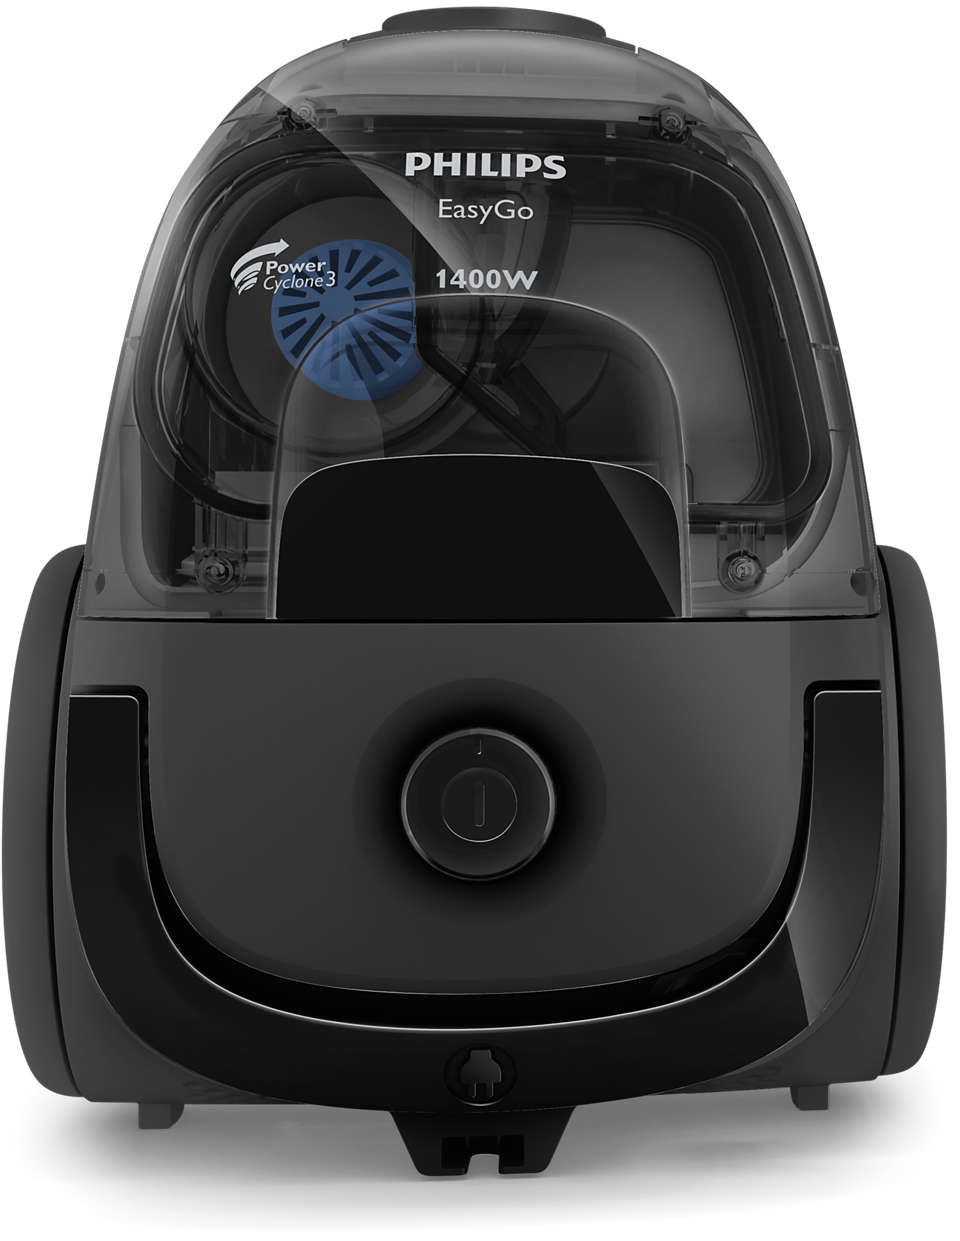 Bagless vacuum cleaner FC8087/61 | Philips